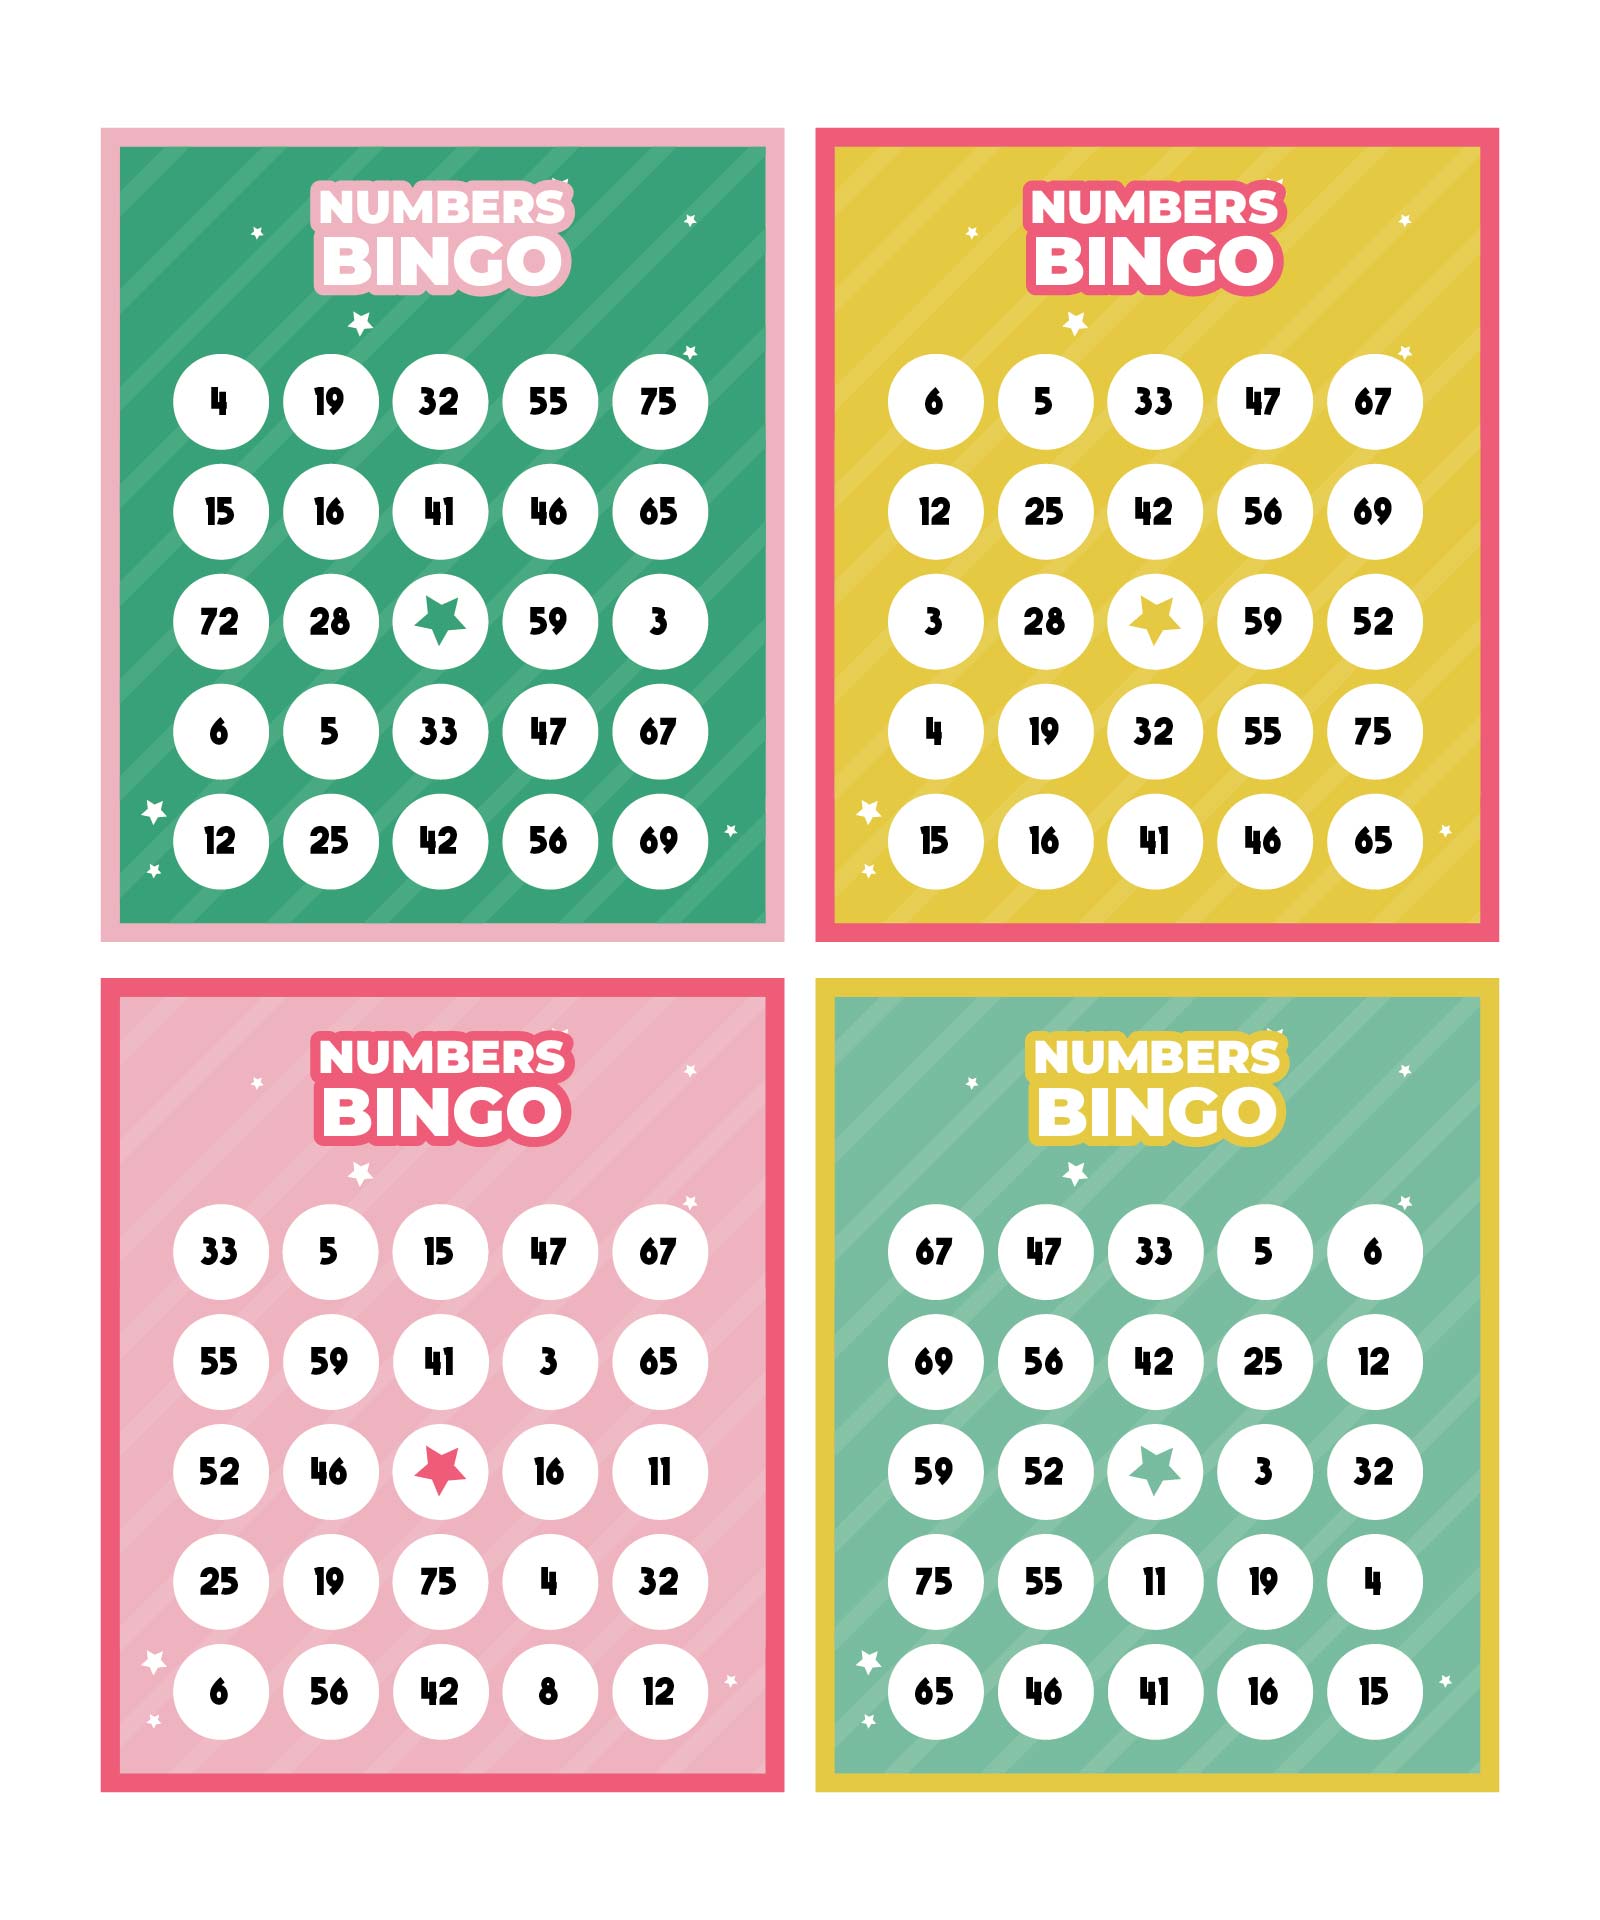 5-best-images-of-free-printable-number-bingo-cards-printable-bingo